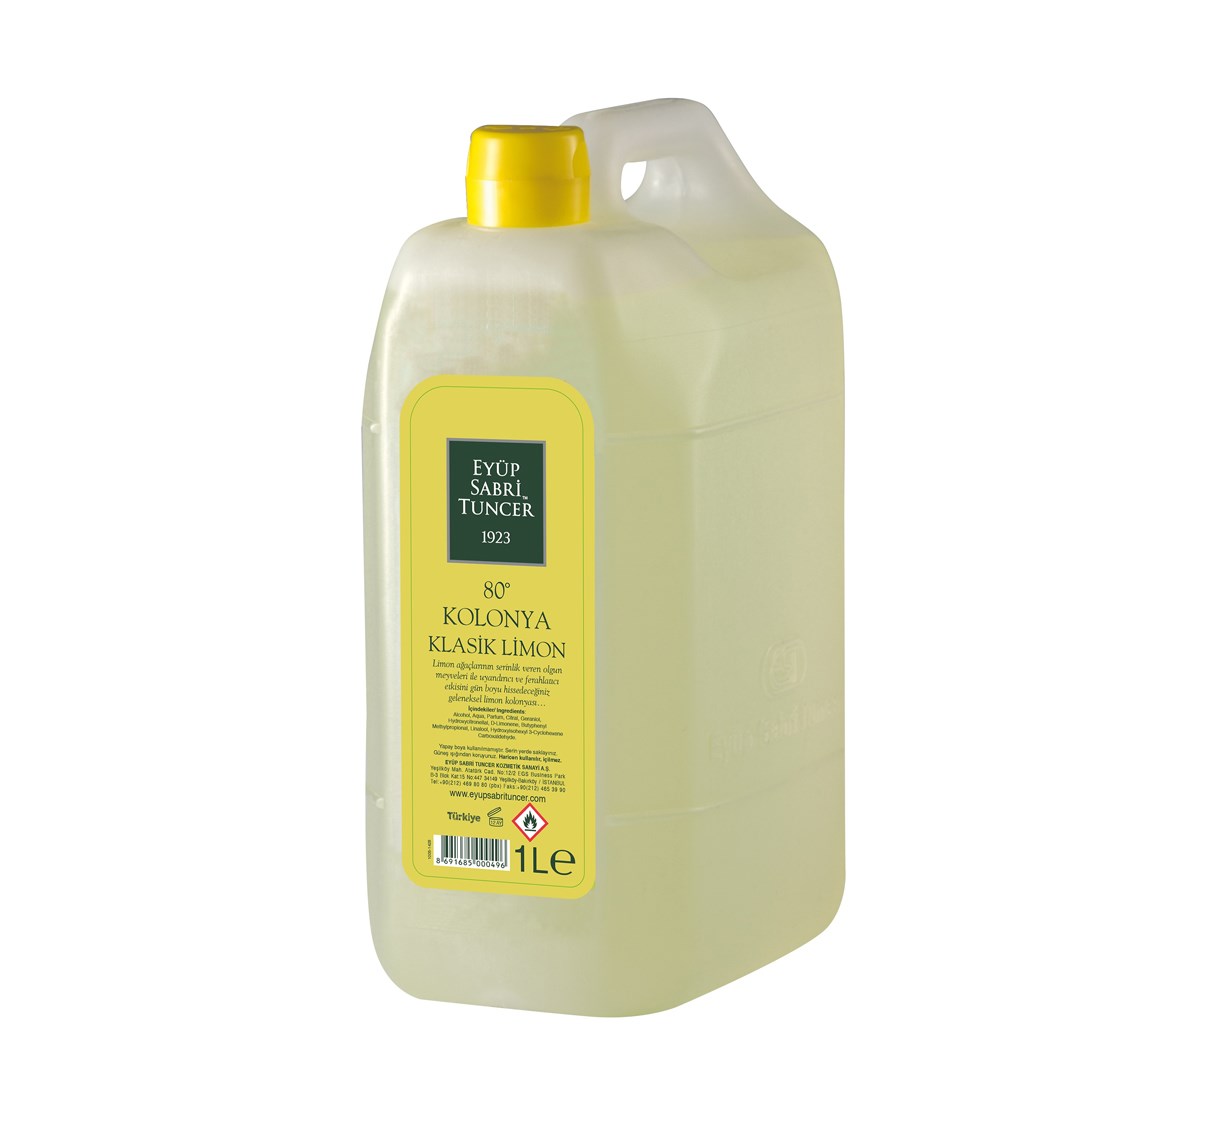 Eyüp Sabri Tuncer Klasik Limon Kolonyası Pet Bidon 1000 ml